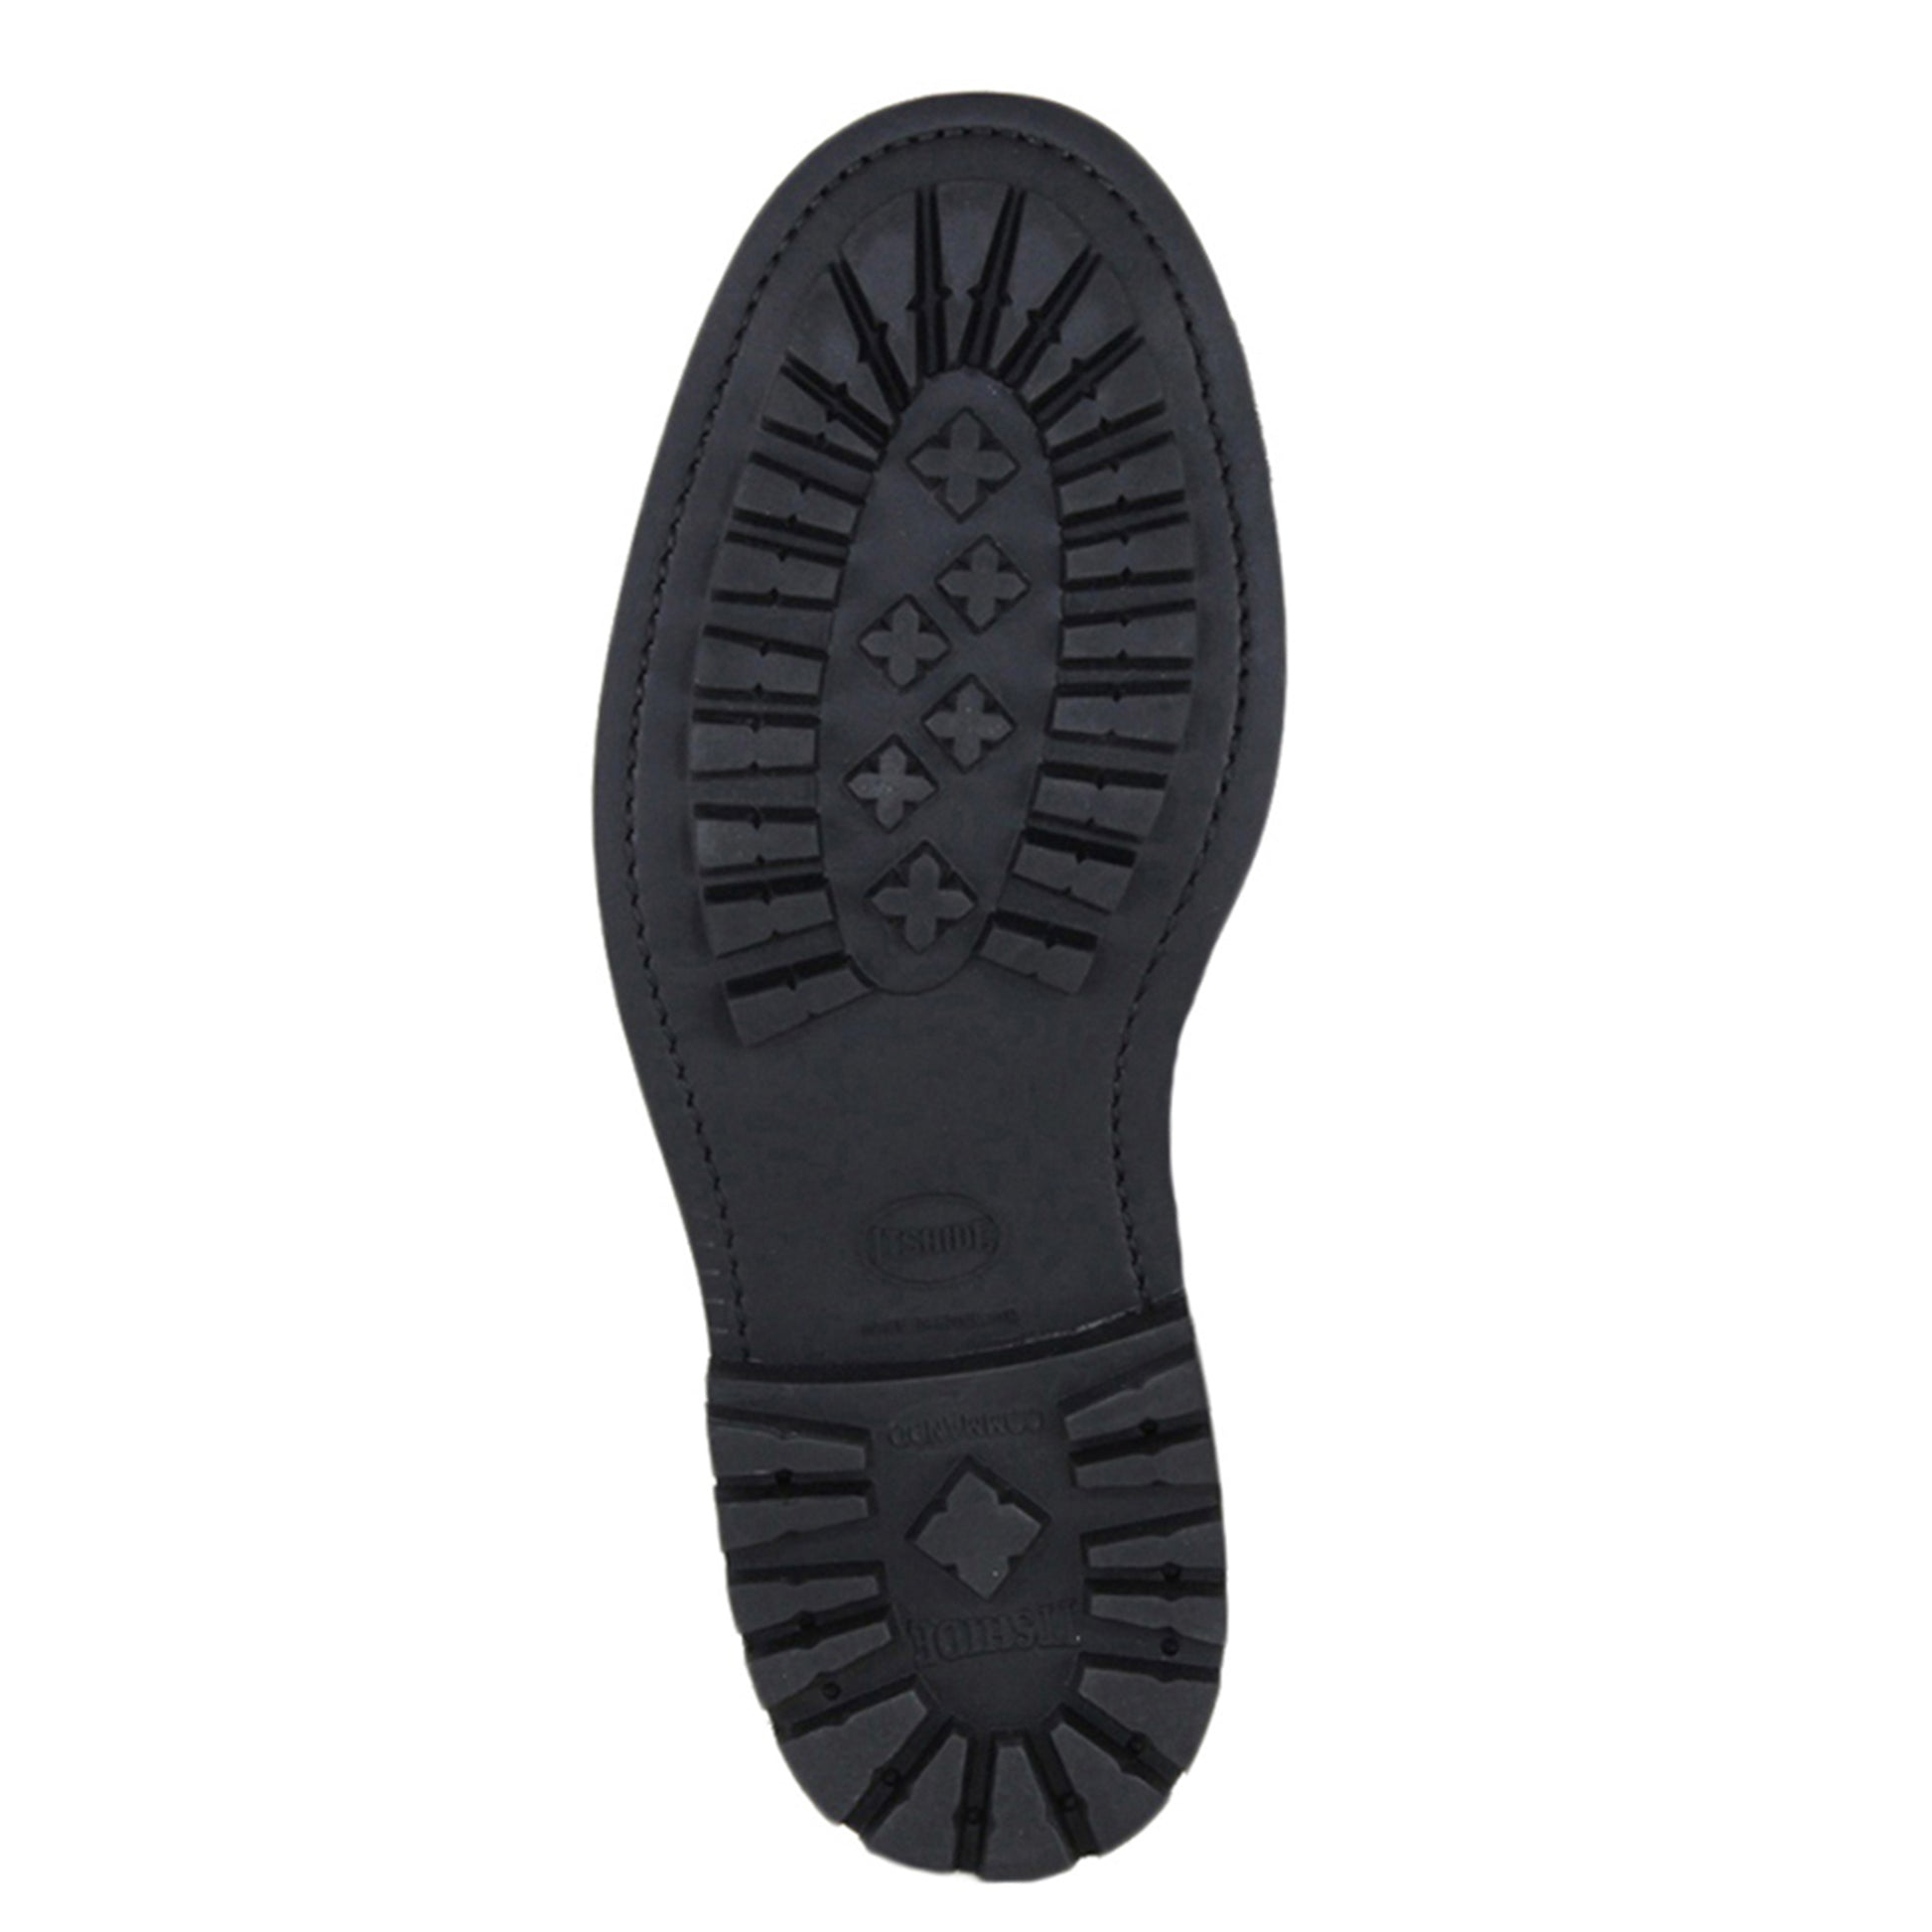 Sanders Worcester Gibson Derby Shoe Leather Footwear in Black Sole